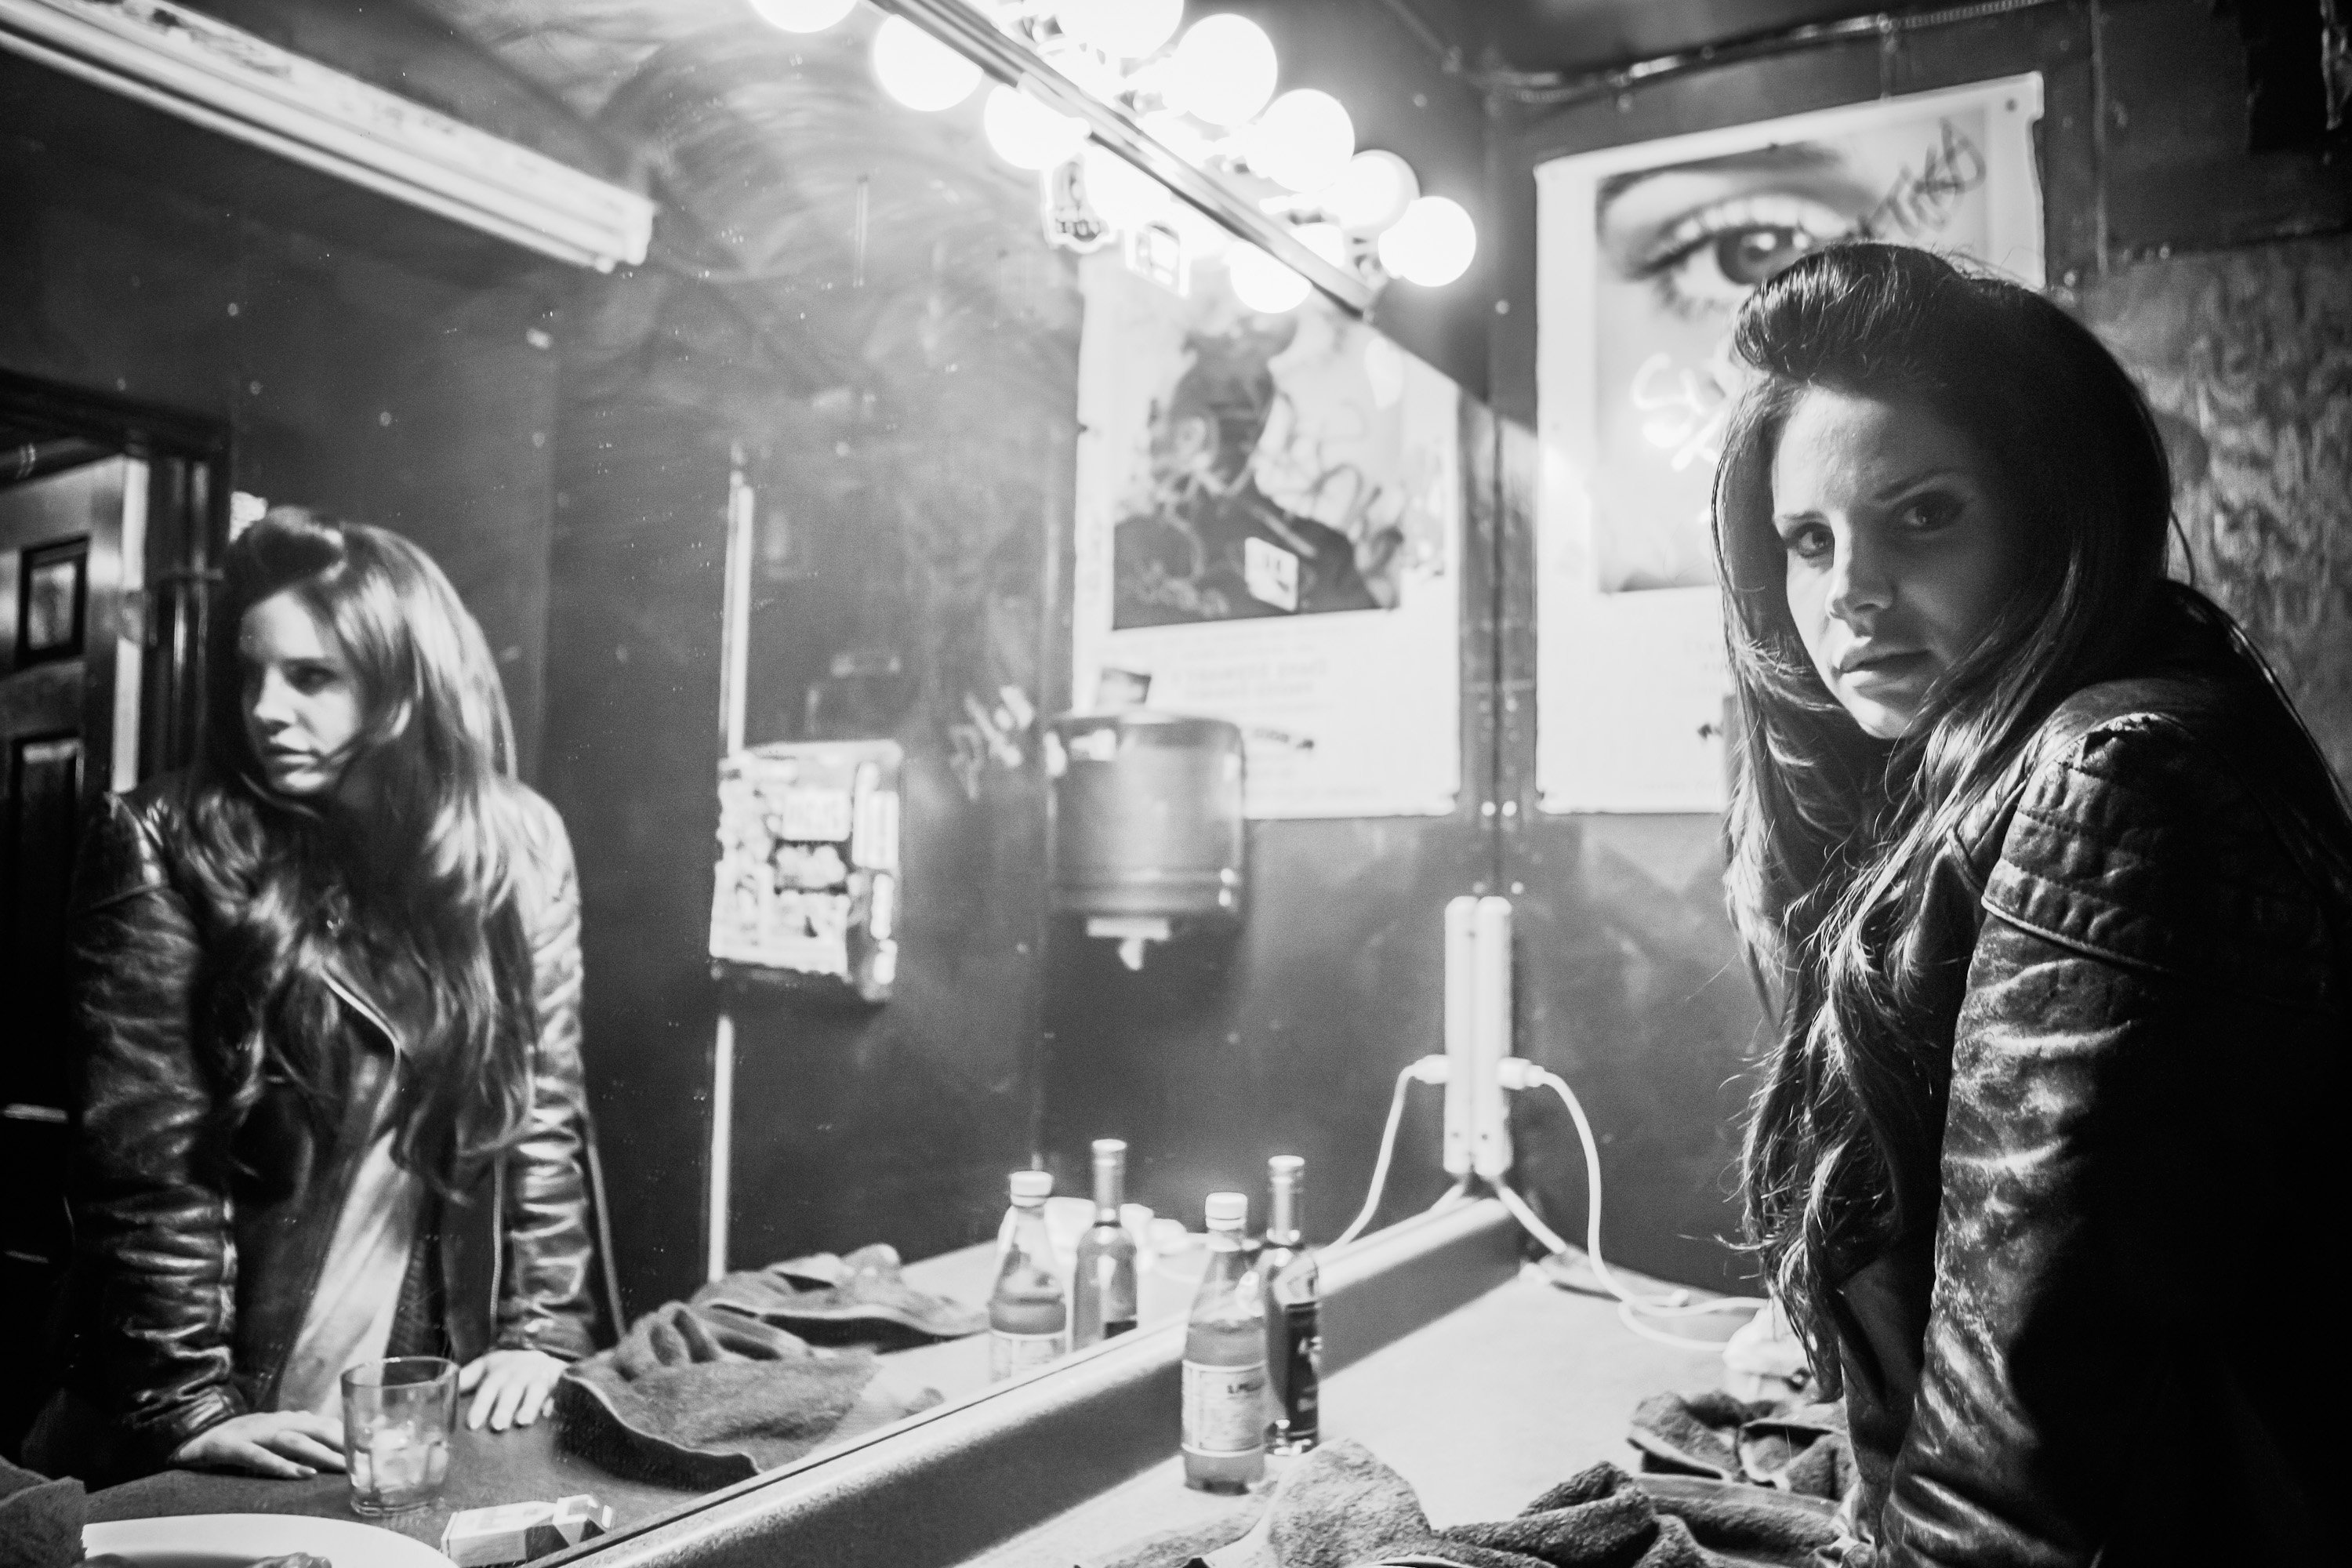 Lana Del Rey by a mirror